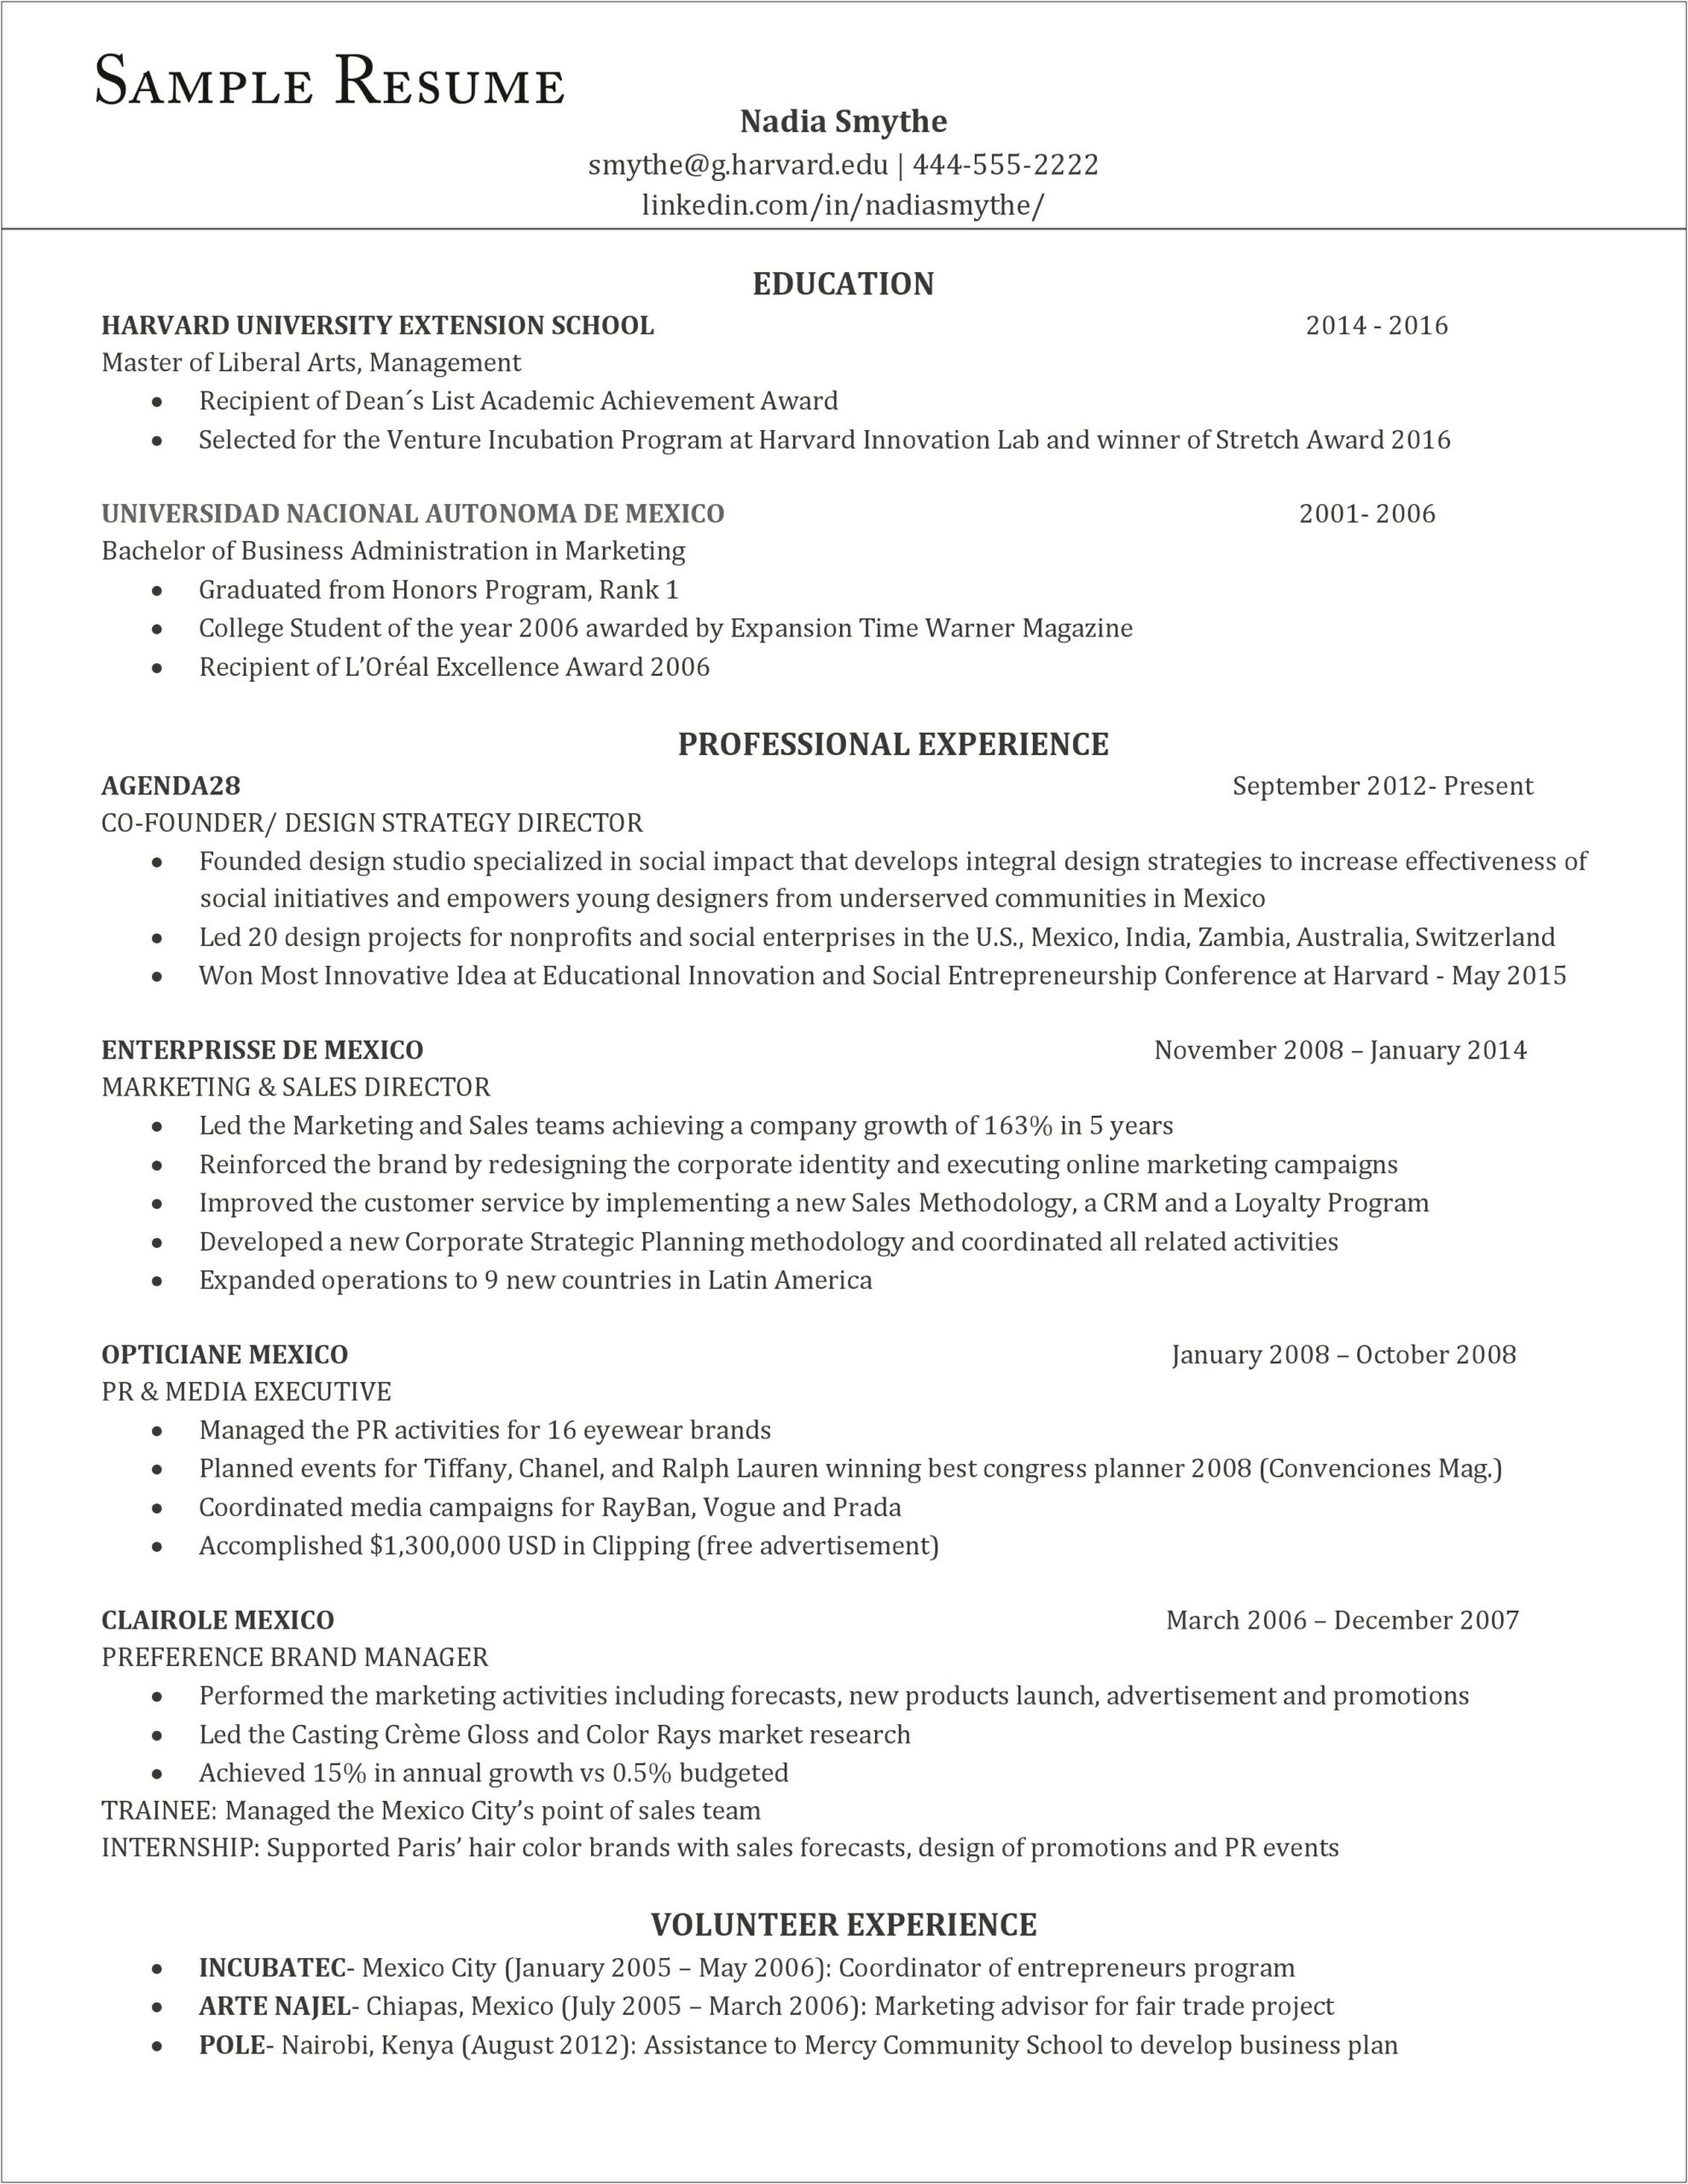 Resume Samples For Education Jobs